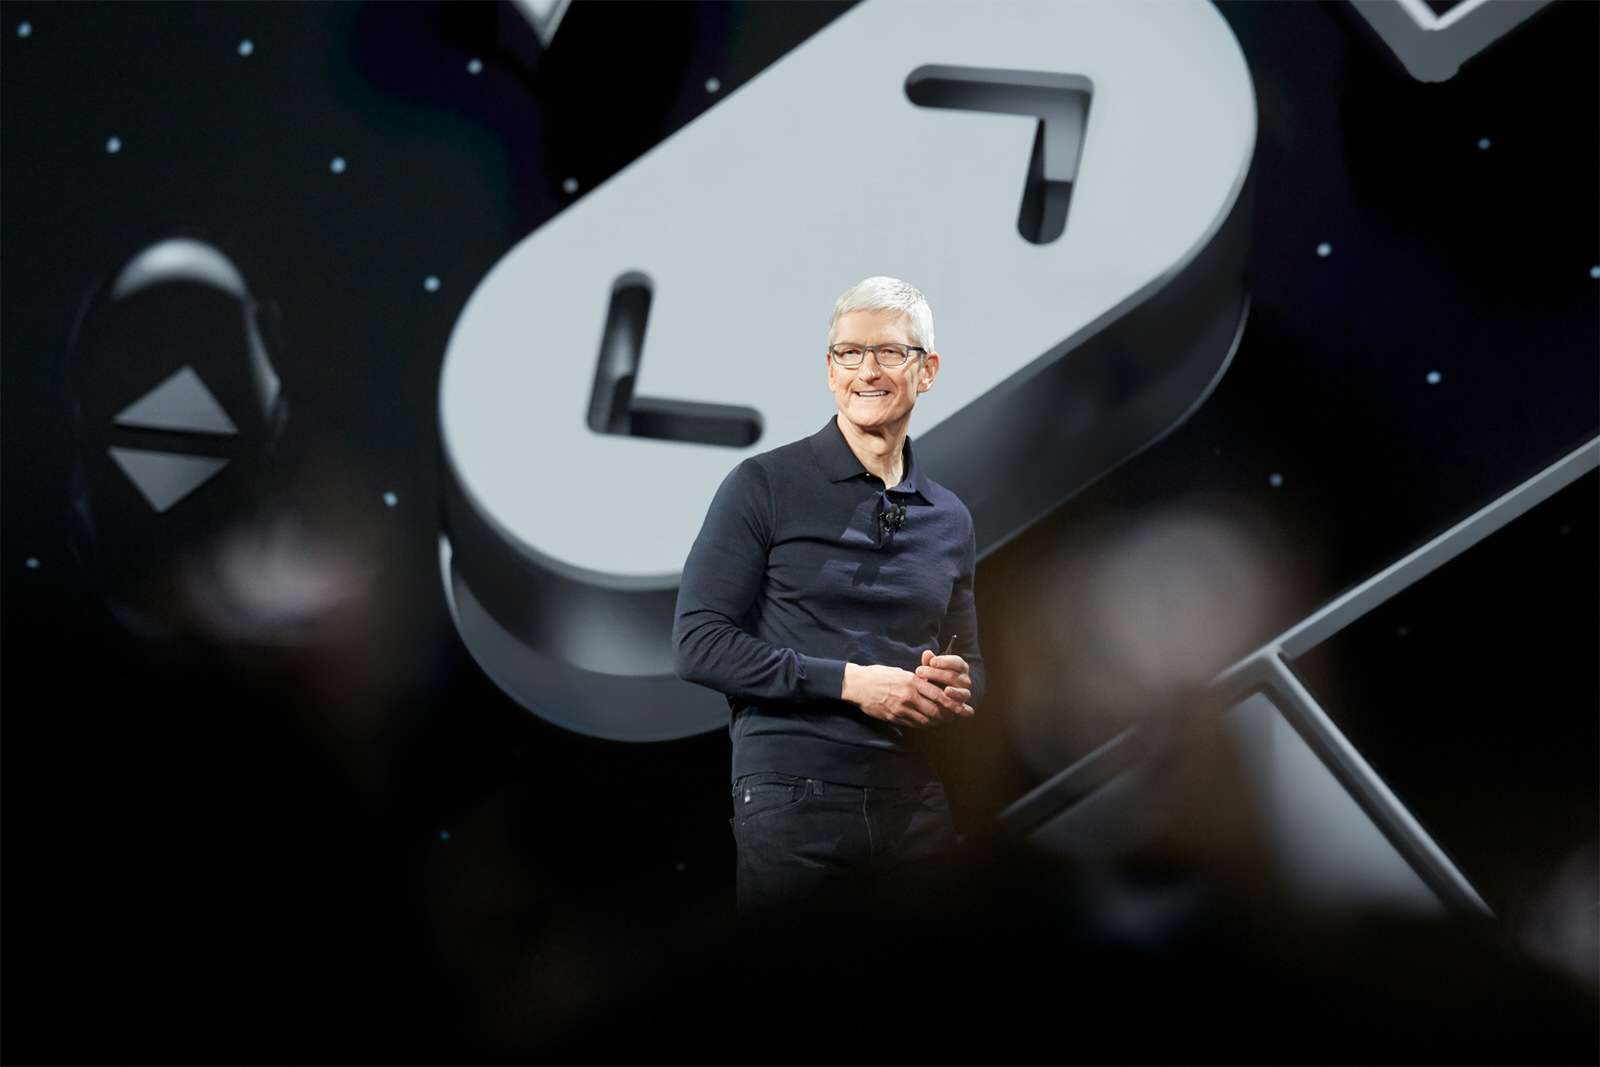 【要約】WWDC 2018の発表内容で重要なポイントまとめ「iOS 12」「macOS Mojave」など発表